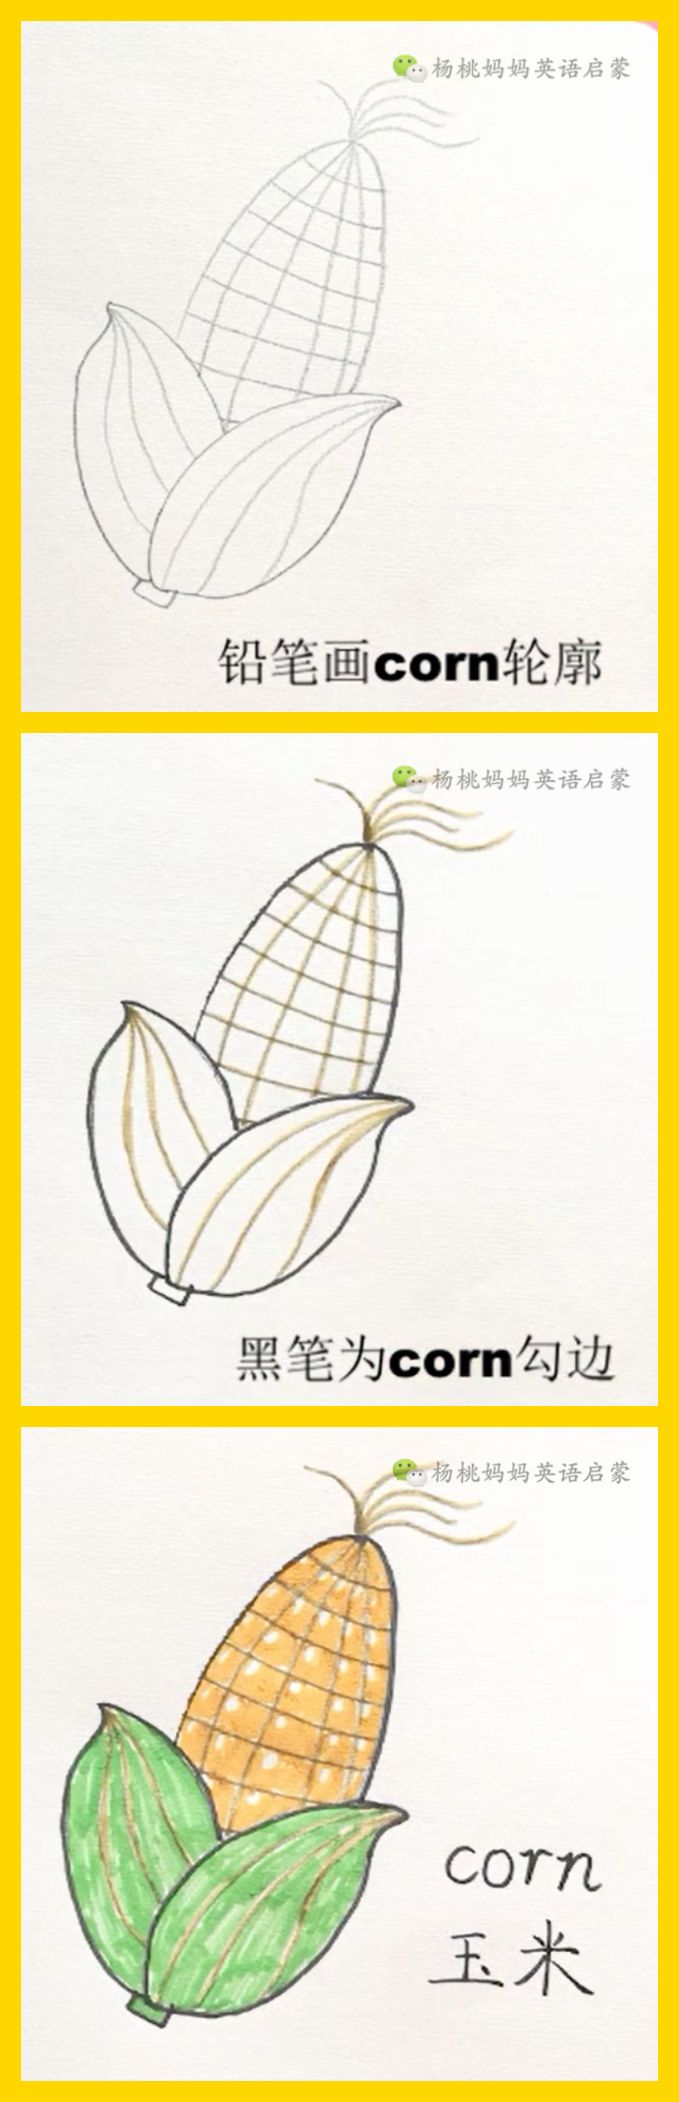 英语萌萌画 | corn 玉米